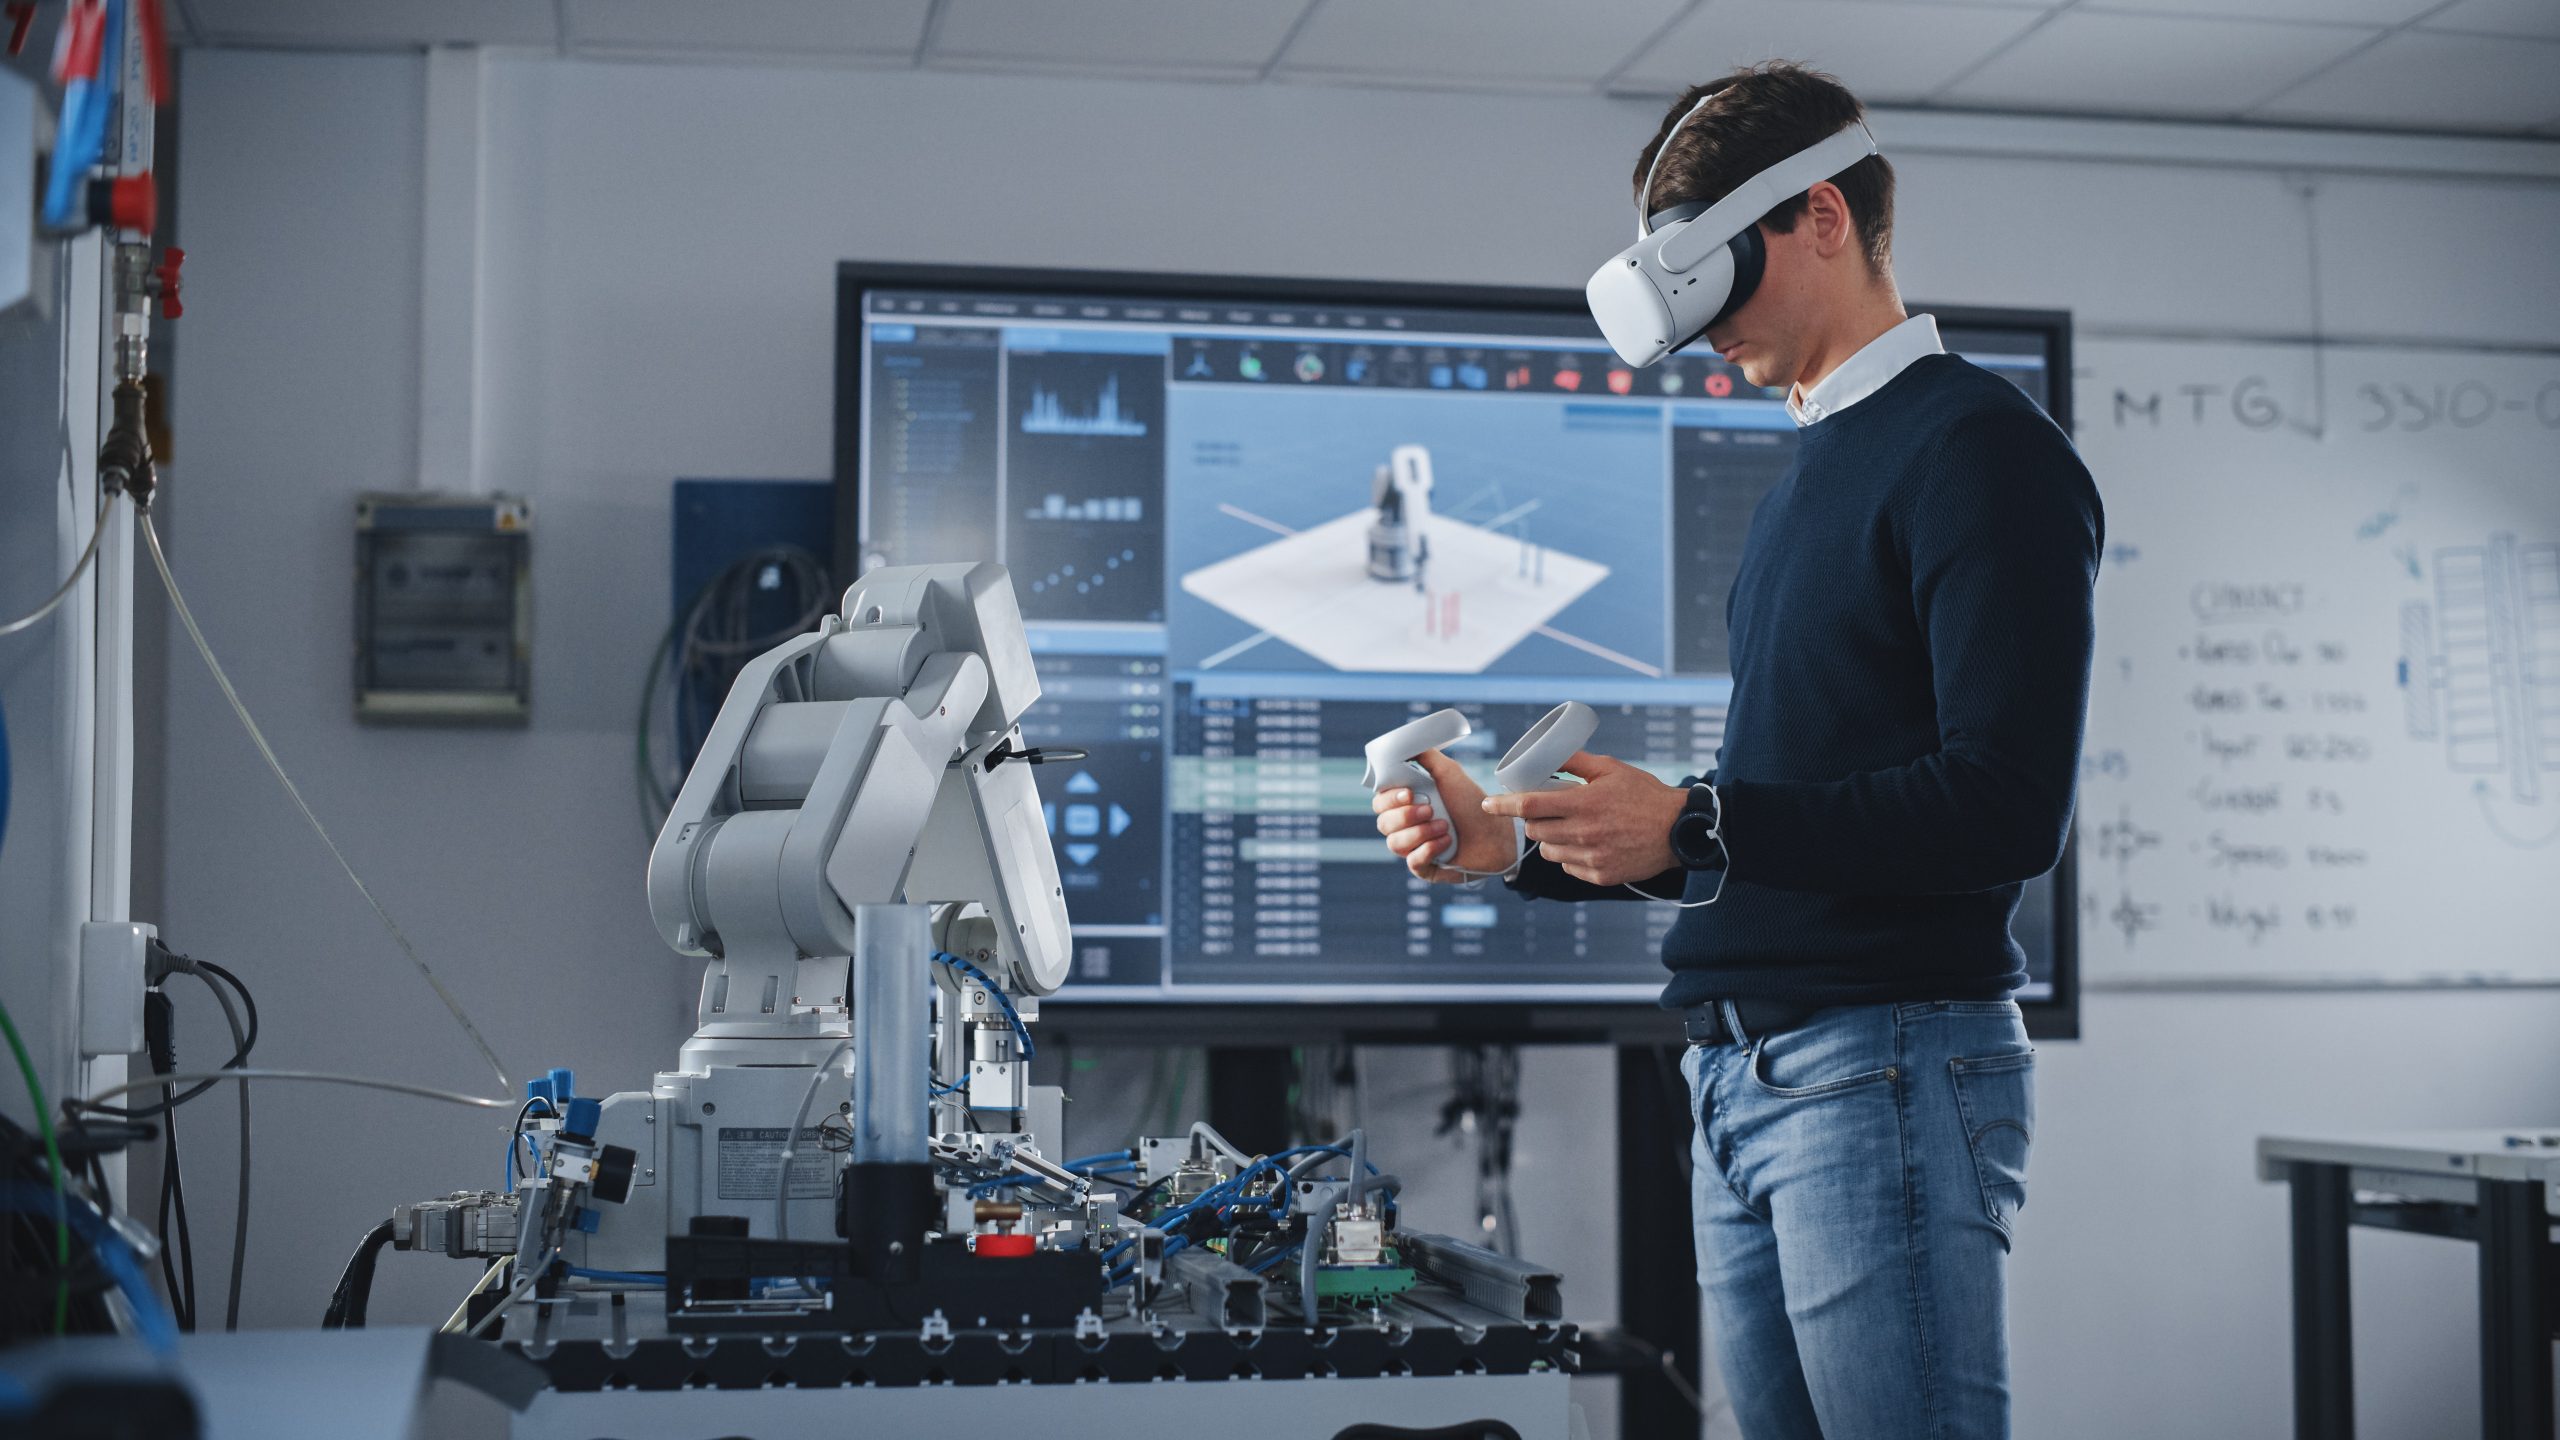 Na sala de aula de uma universidade de alta tecnologia, um homem usa um headset de VR, segura controladores e se concentra em seus estudos de robótica.